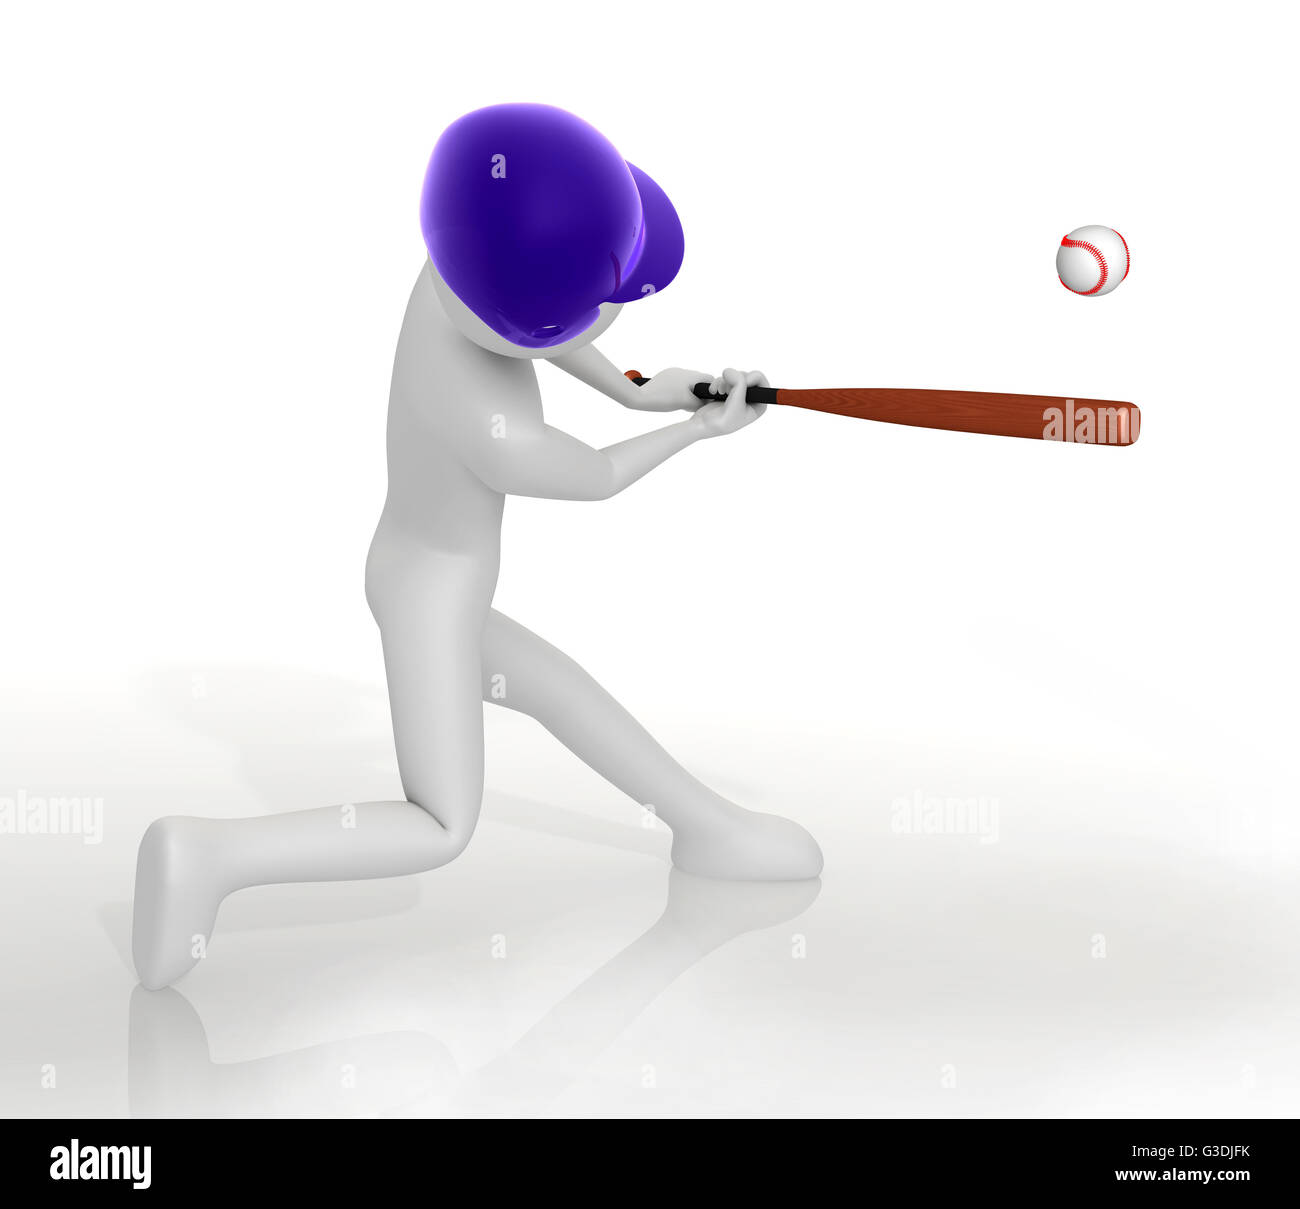 Baseball player swinging bat - 3d illustration Banque D'Images